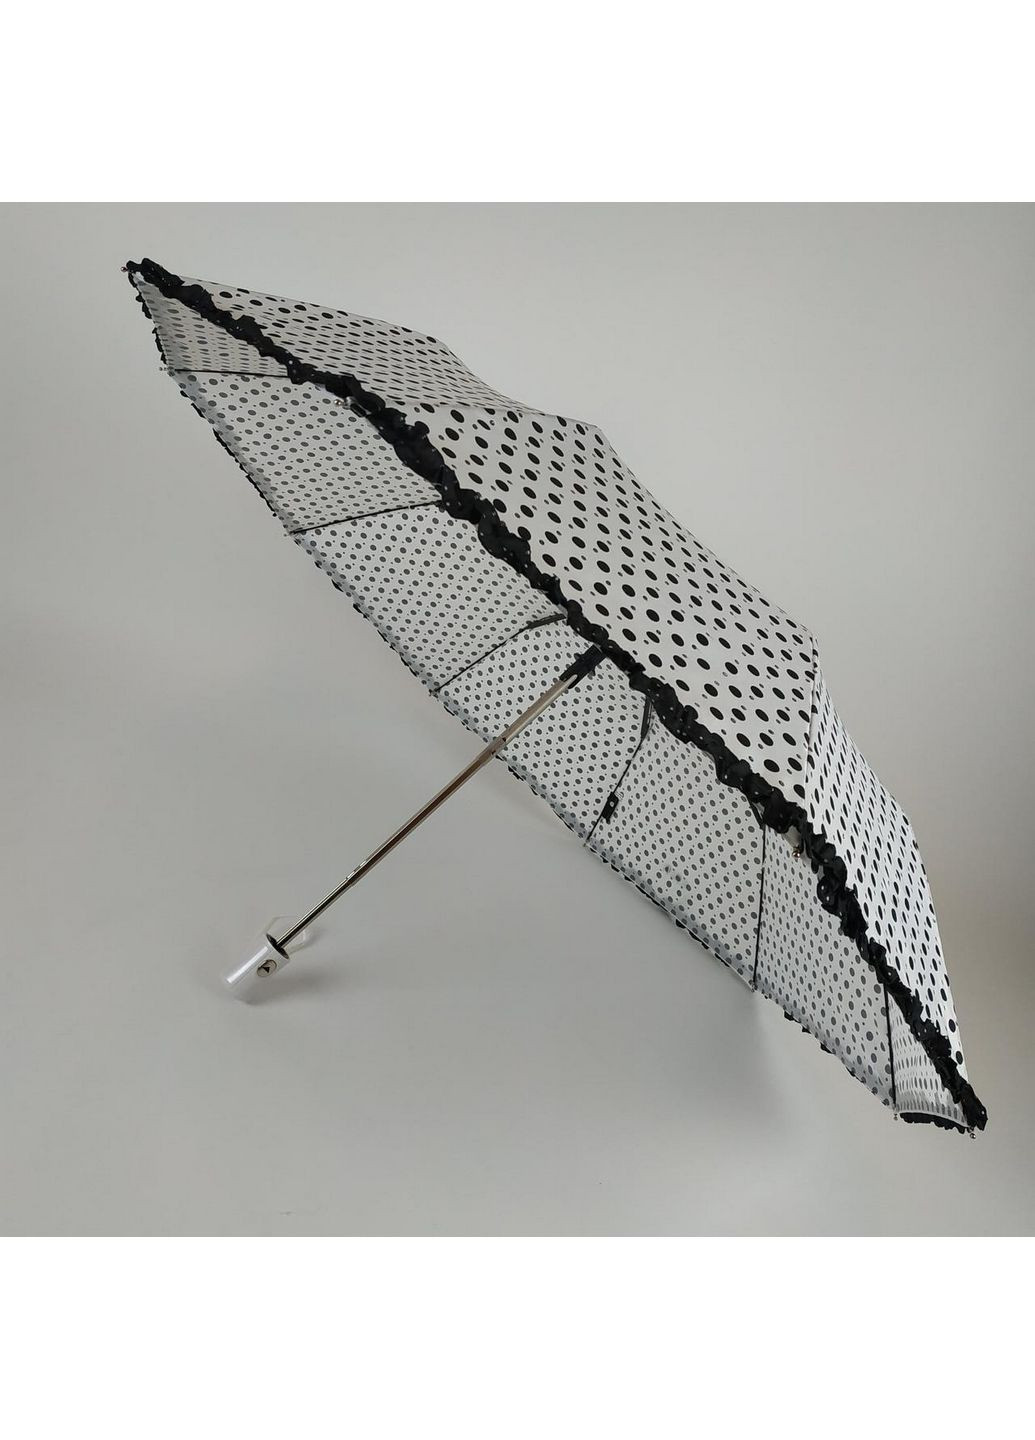 Женский полуавтоматический зонт S&L (282590612)